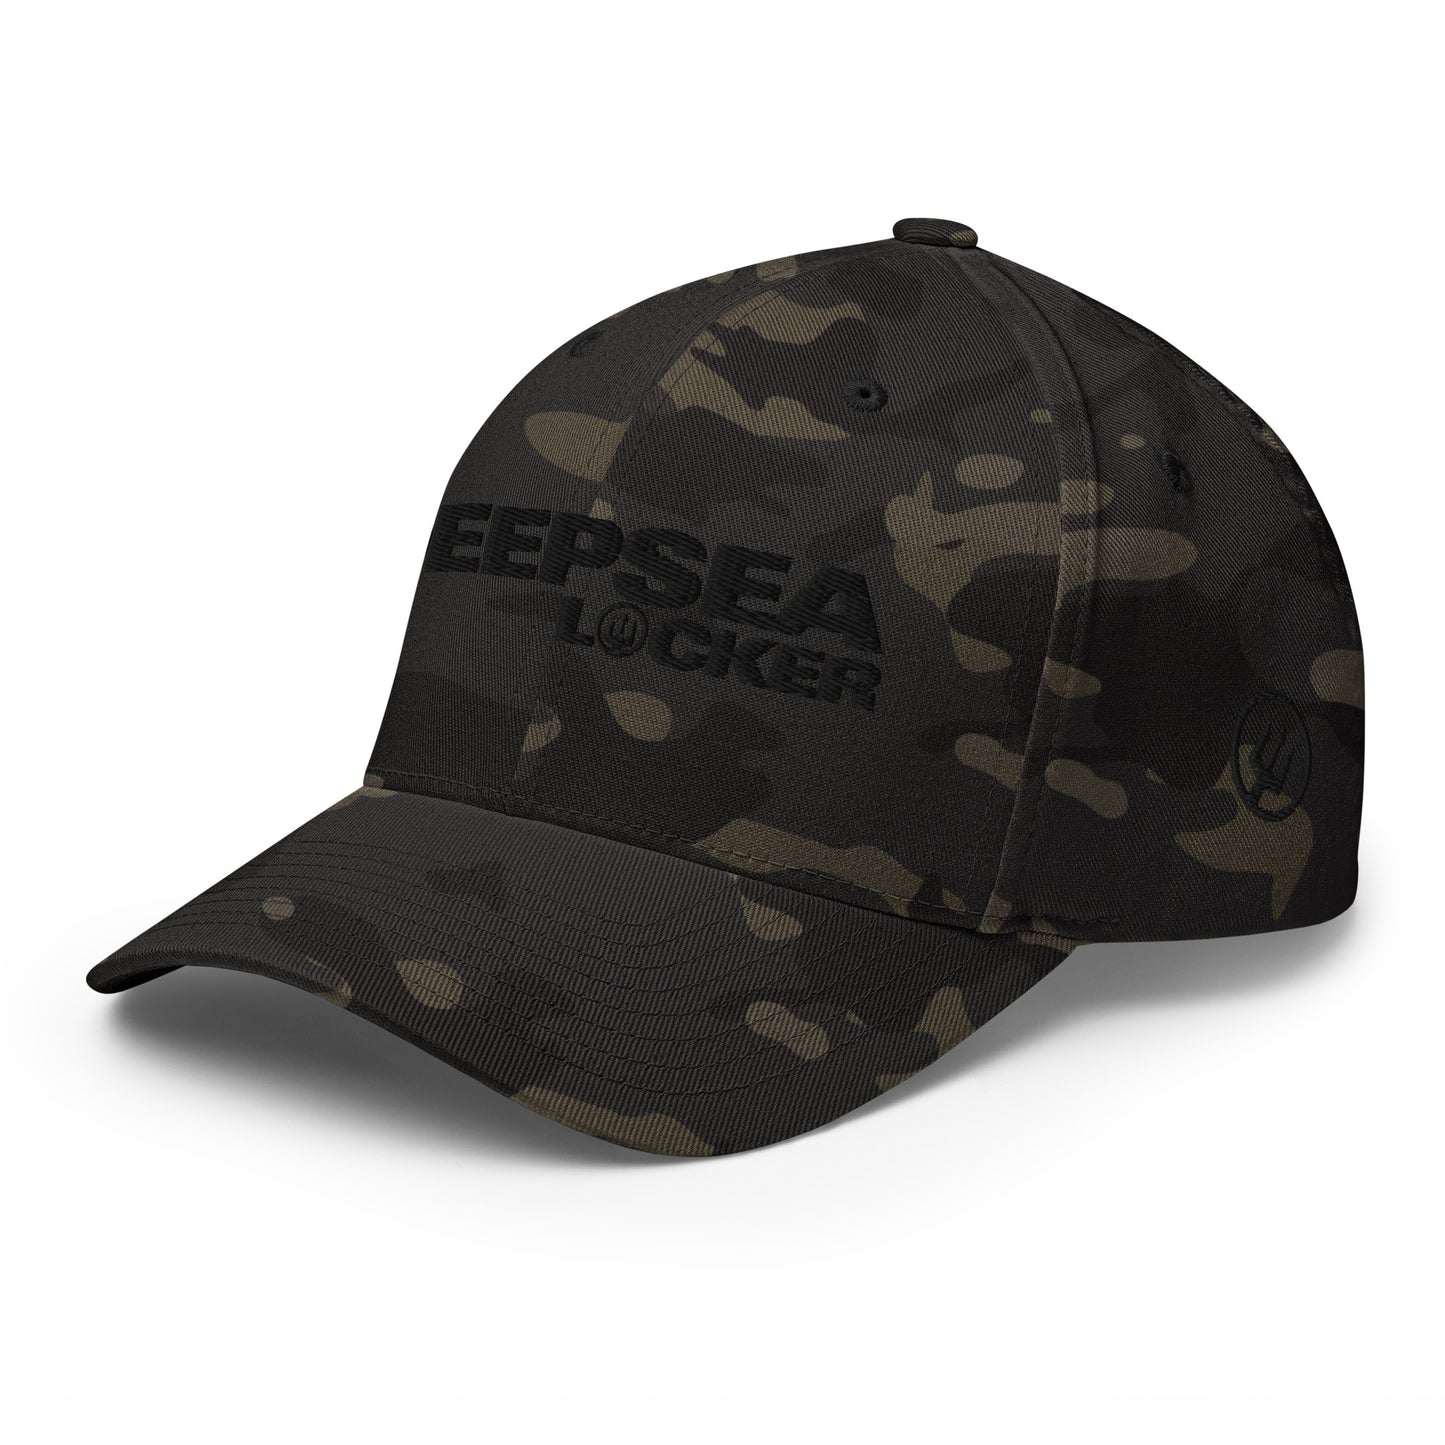 DEEPSEA Locker / Black Out Hat